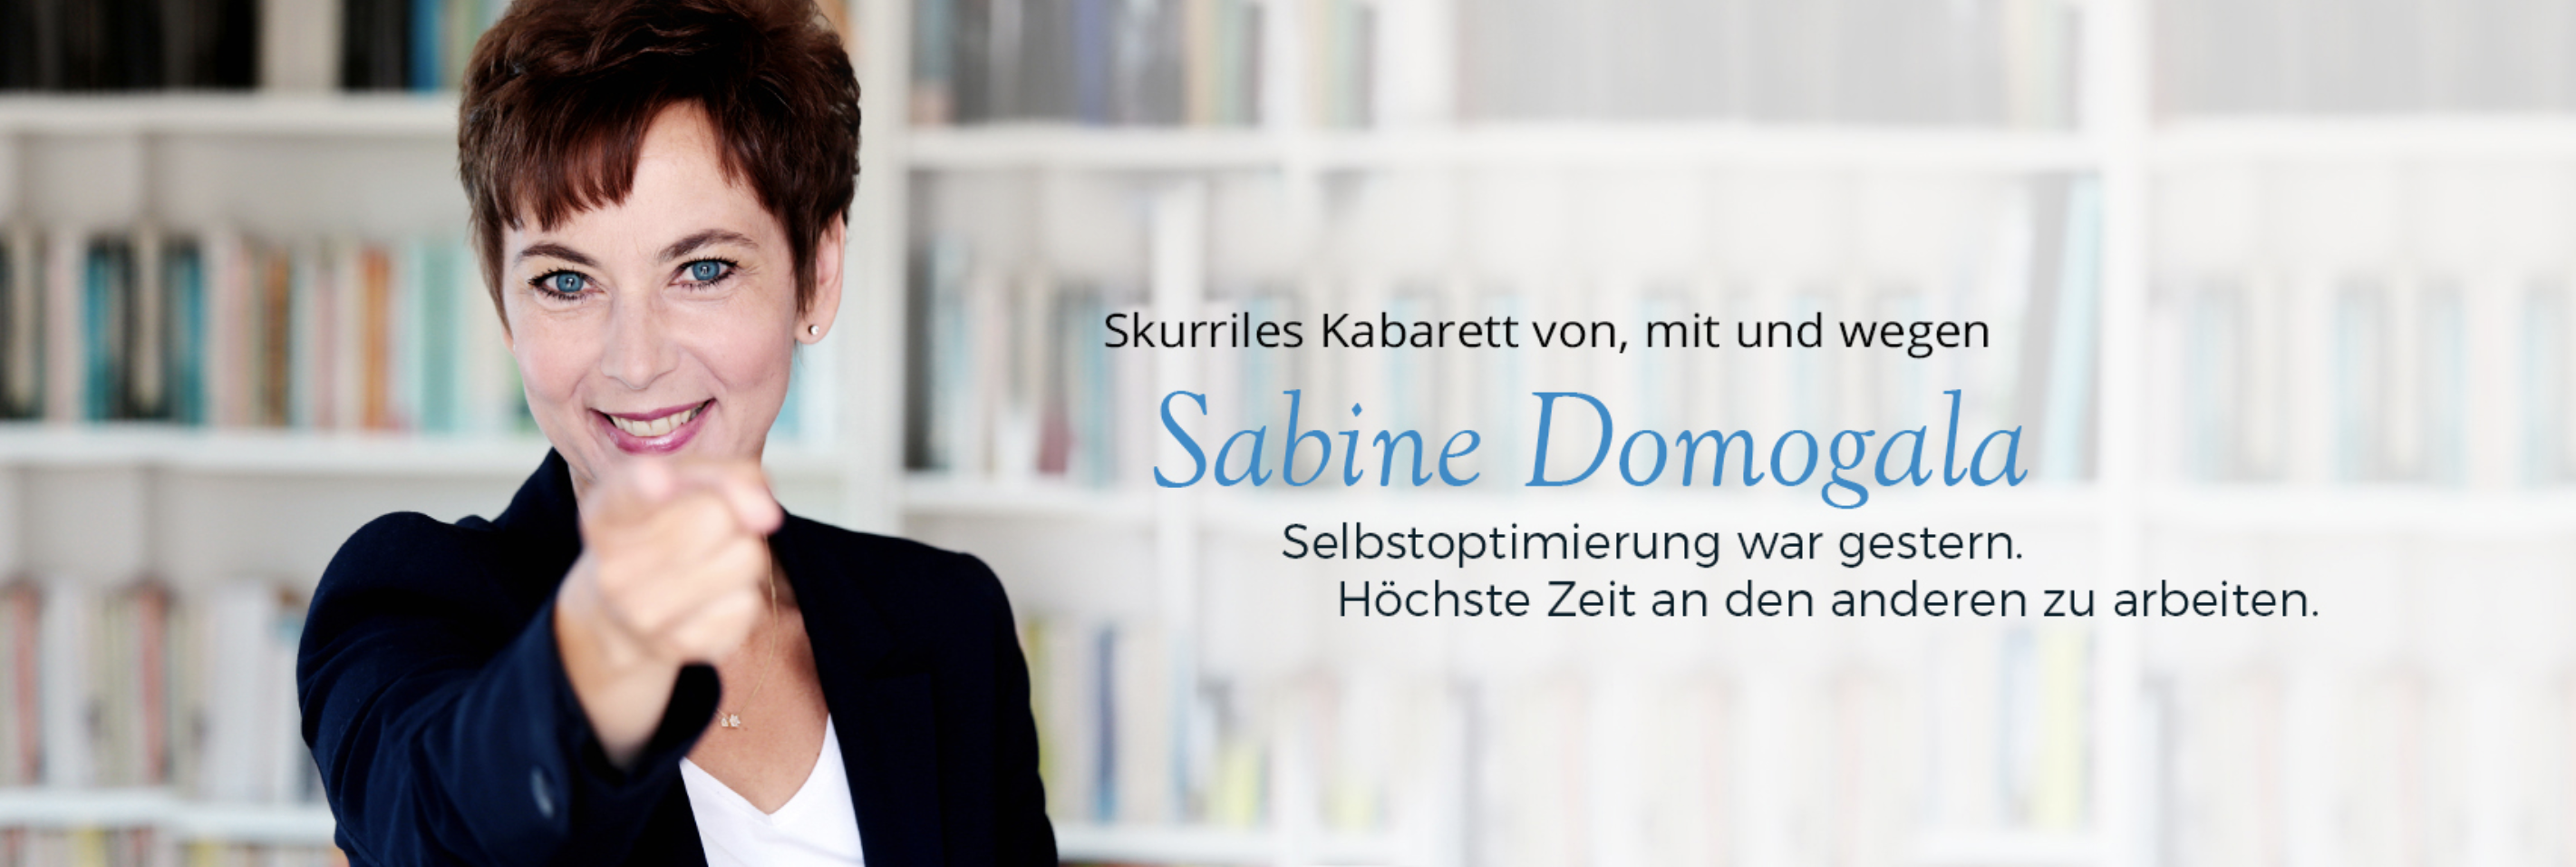 Sabine Domogala live im Gemeindehaus Oberwinter